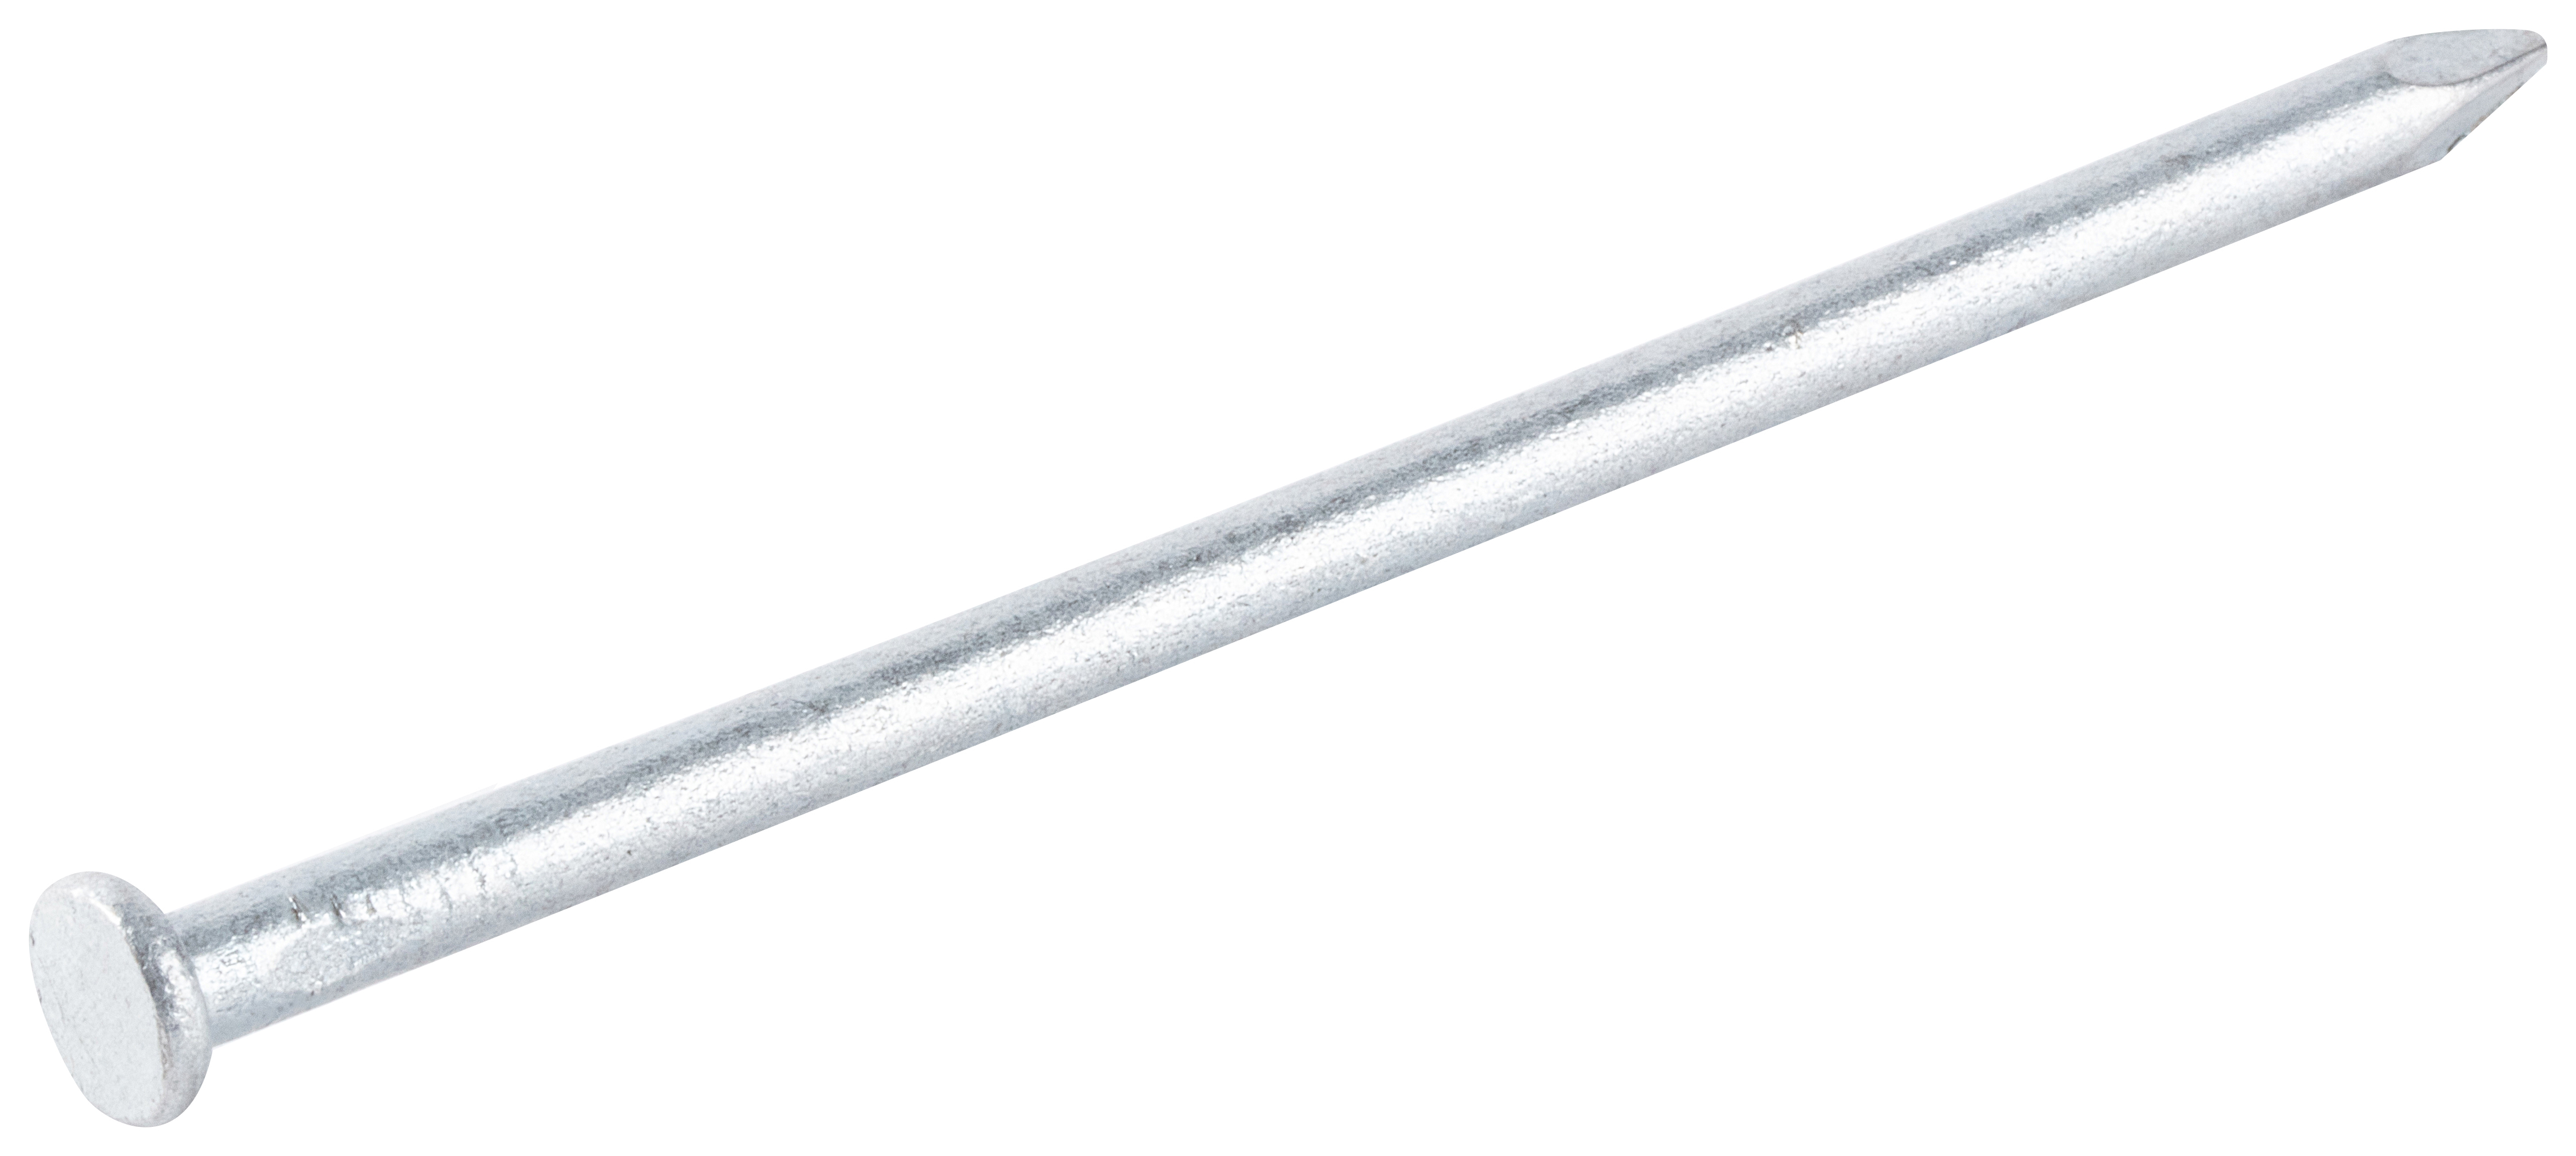 Galvanised Round Wire Nails - 100 x 4.5mm - 500g